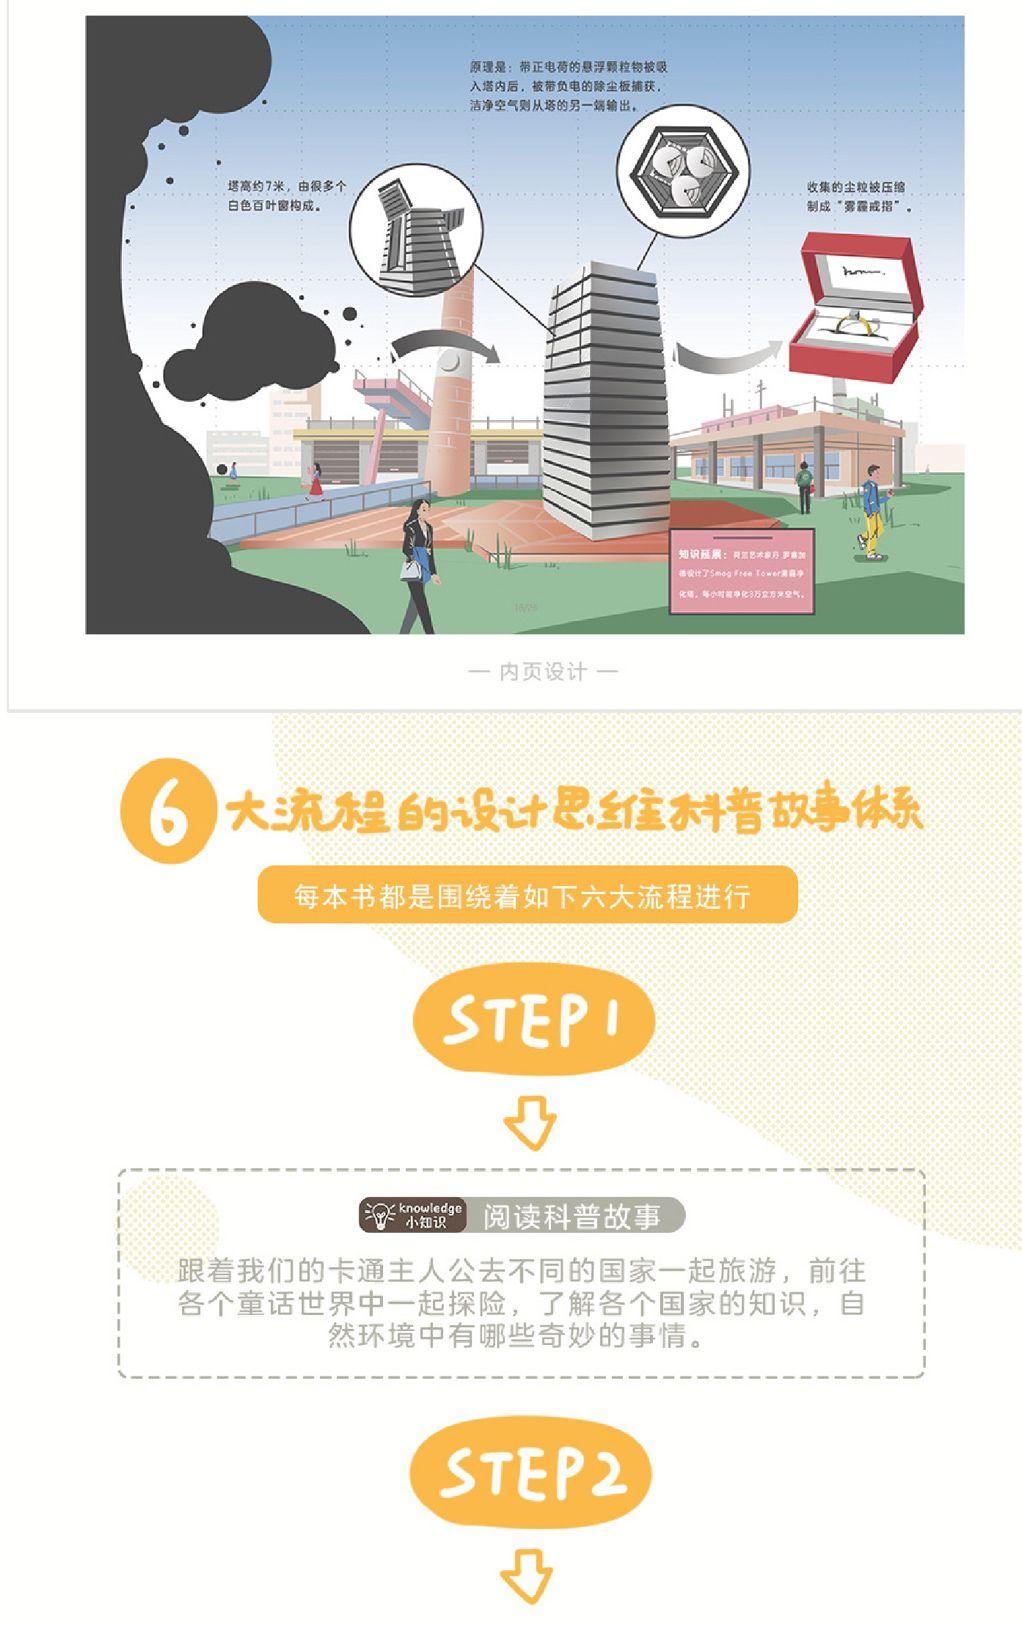 上海包装技术协会_福建省包装饮用水协会_上海模具技术协会